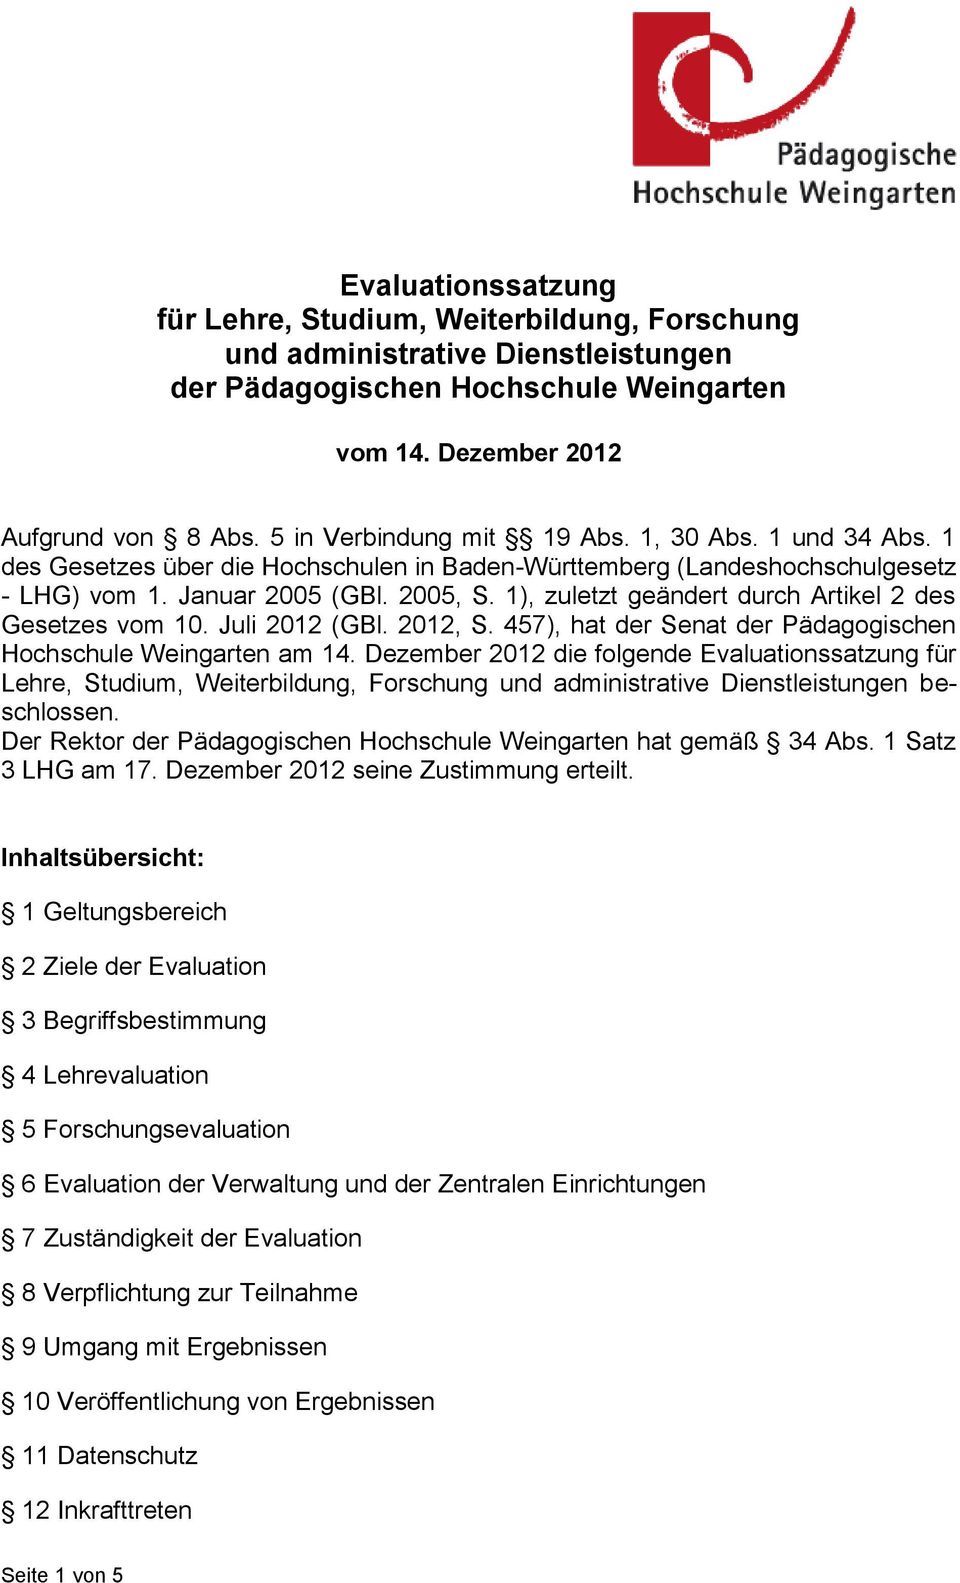 1), zuletzt geändert durch Artikel 2 des Gesetzes vom 10. Juli 2012 (GBl. 2012, S. 457), hat der Senat der Pädagogischen Hochschule Weingarten am 14.